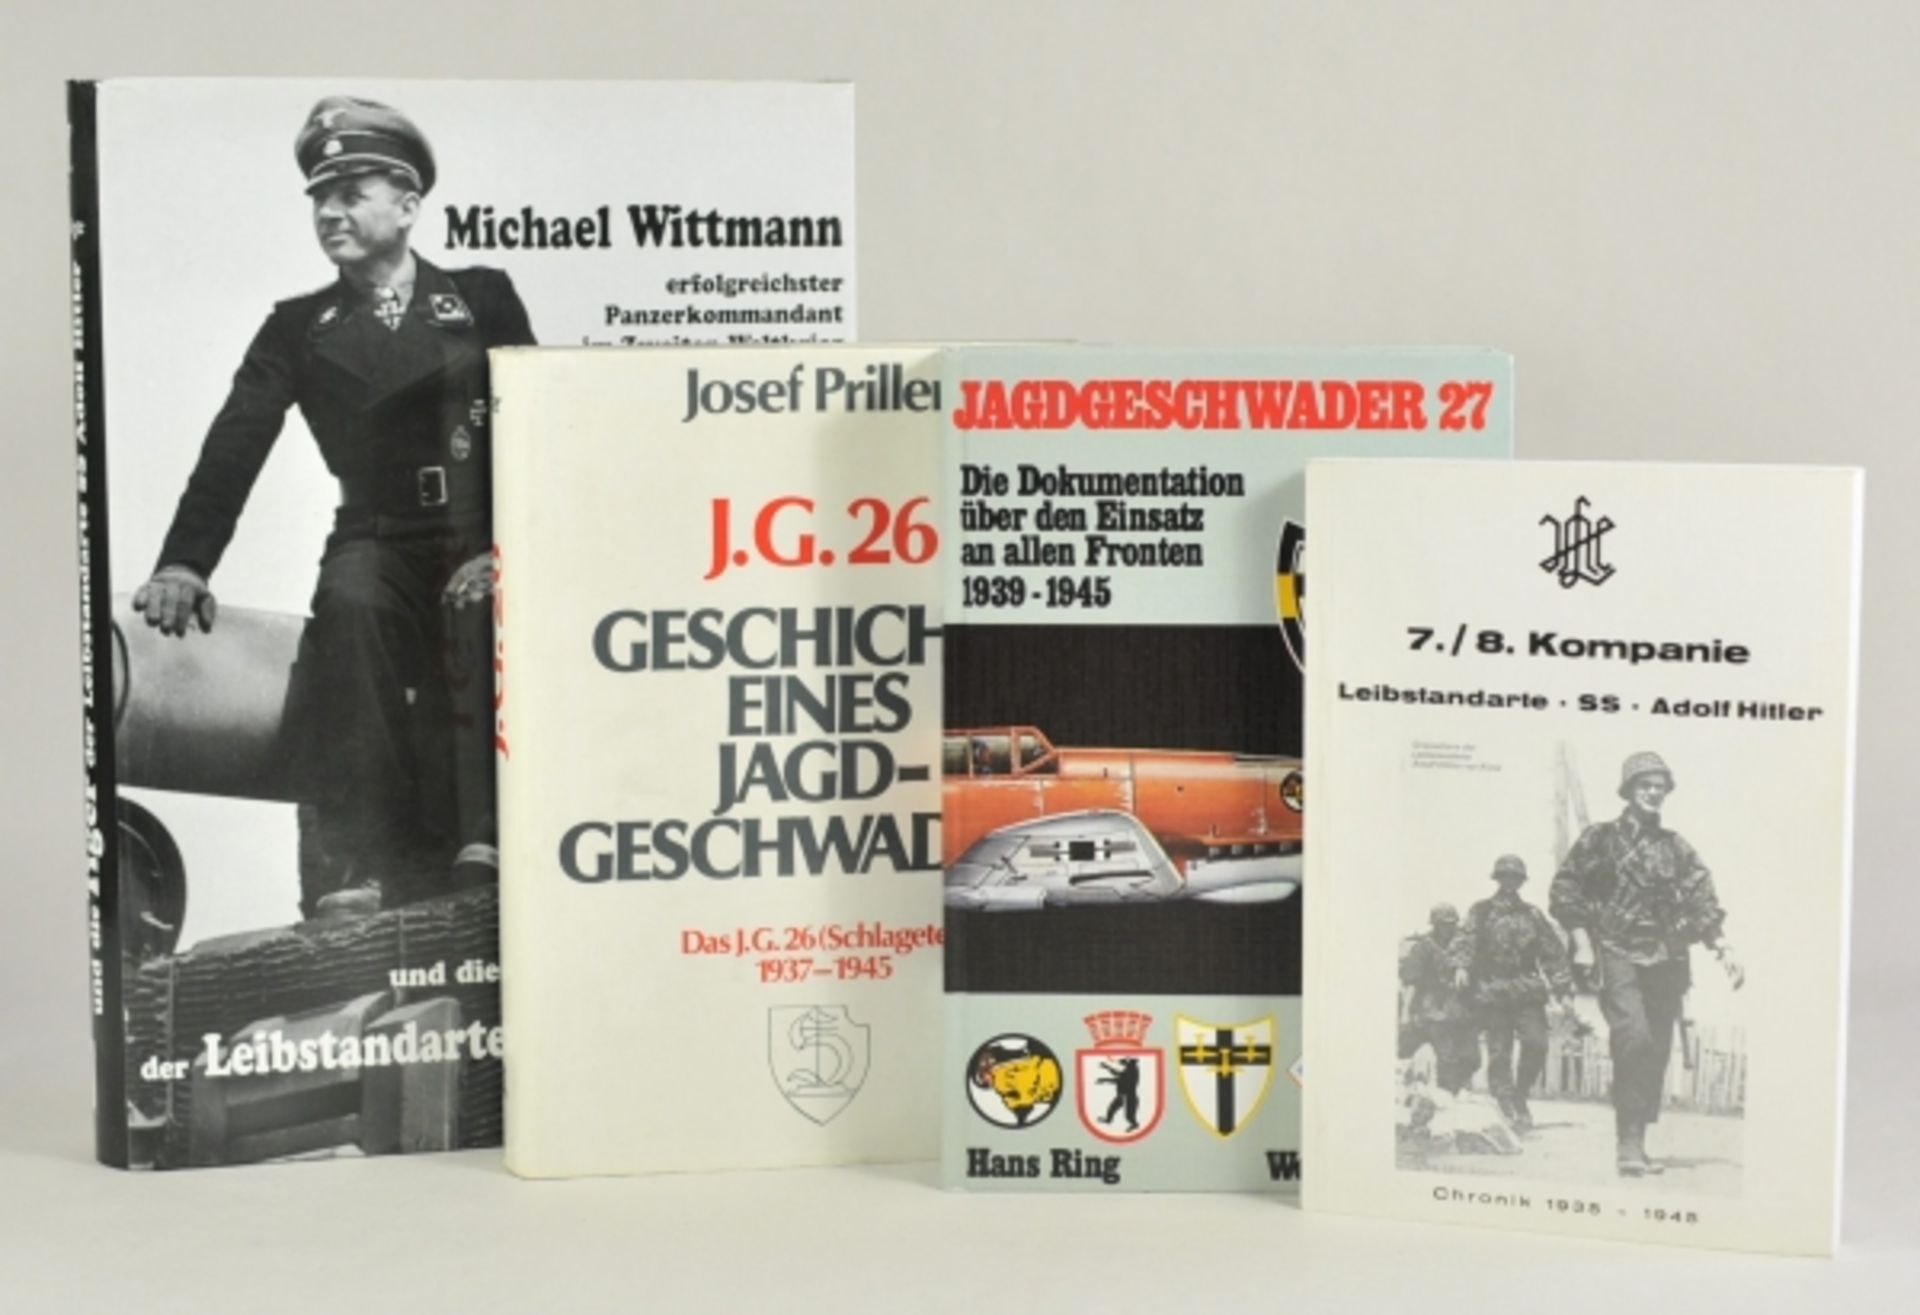 Vier Einheitsgeschichten.SS und Jagdschwader.Zustand: II

Four unity stories.SS and fighter wing.